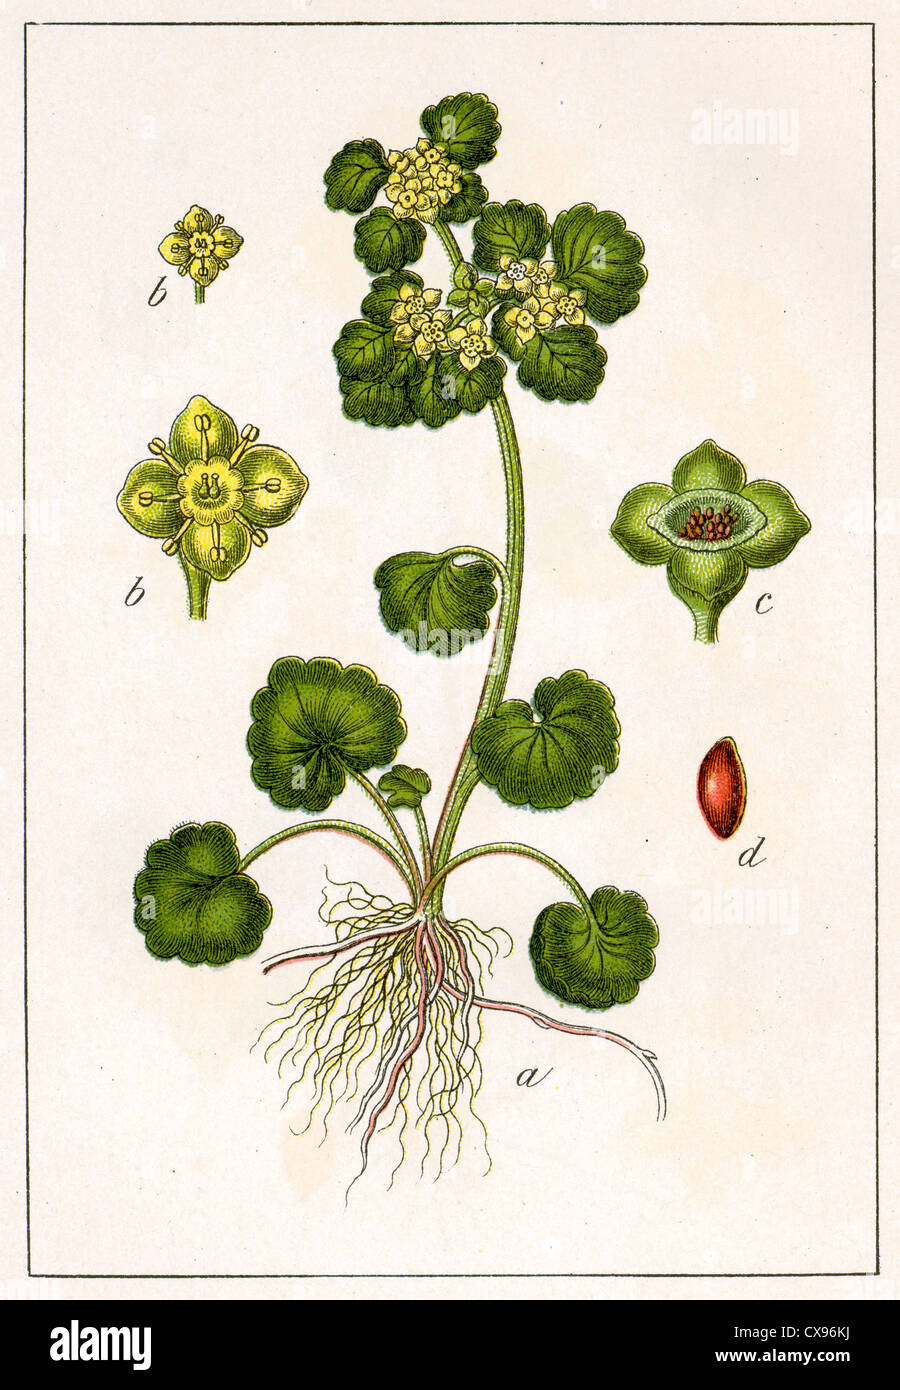 Chrysosplenium alternifolium Stock Photo